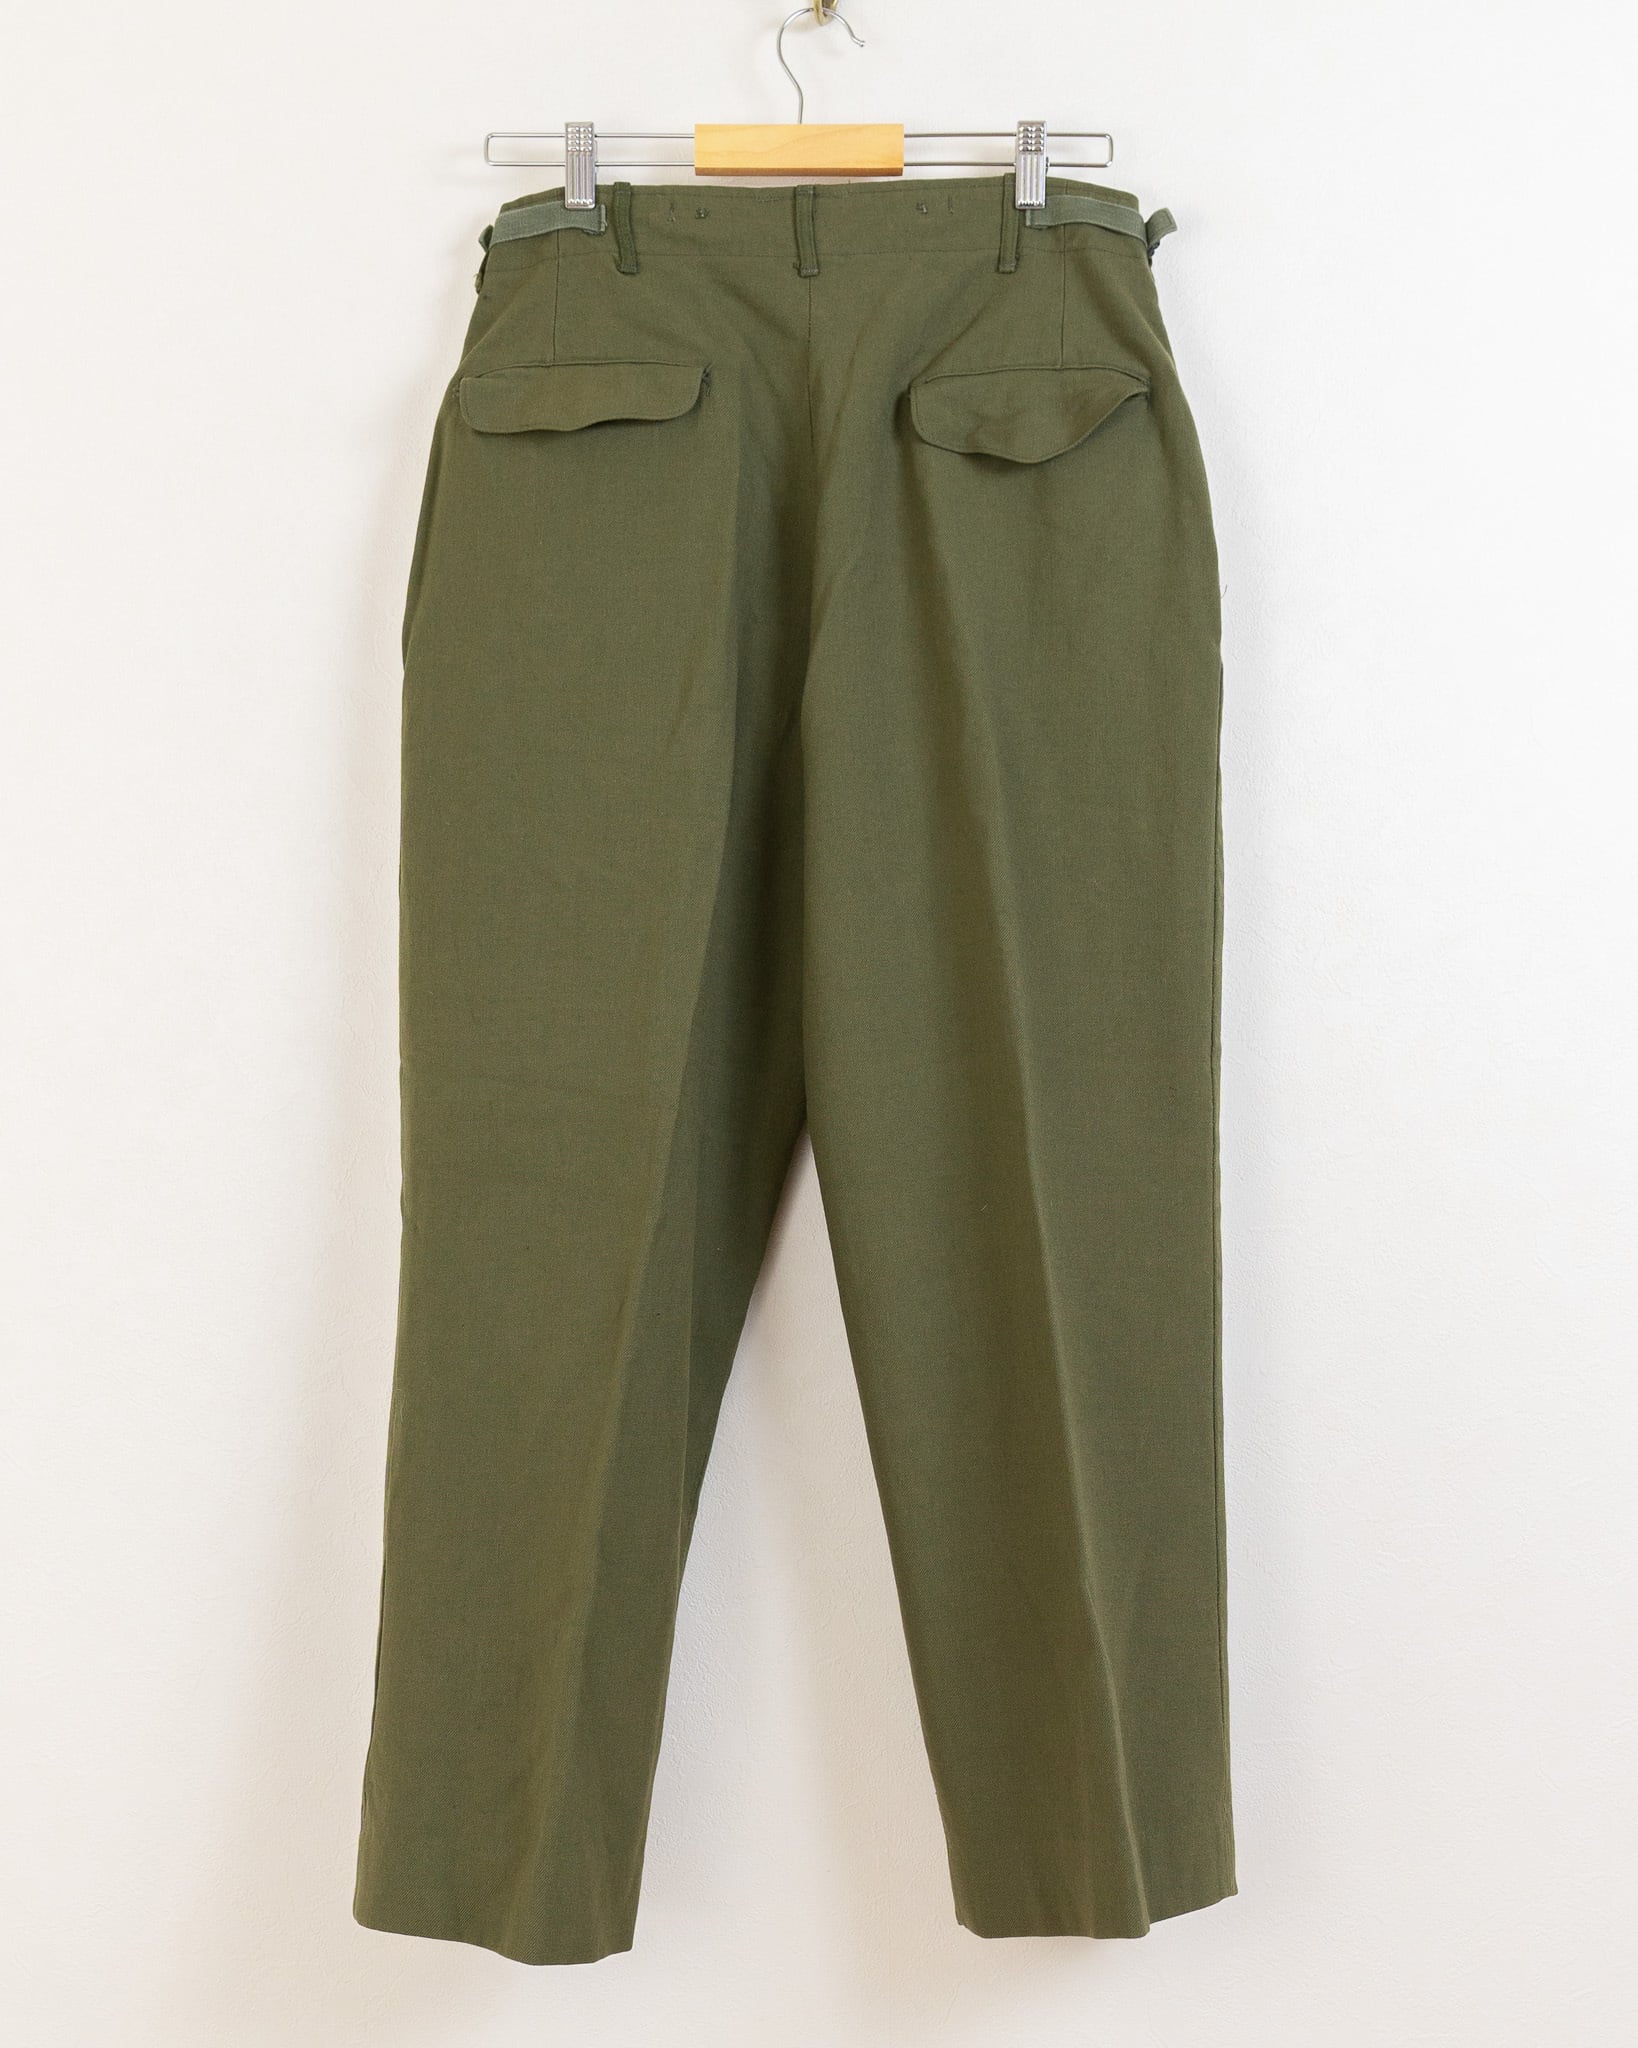 【DEADSTOCK】U.S.Army M-1951 Field Wool Trousers OG-108 